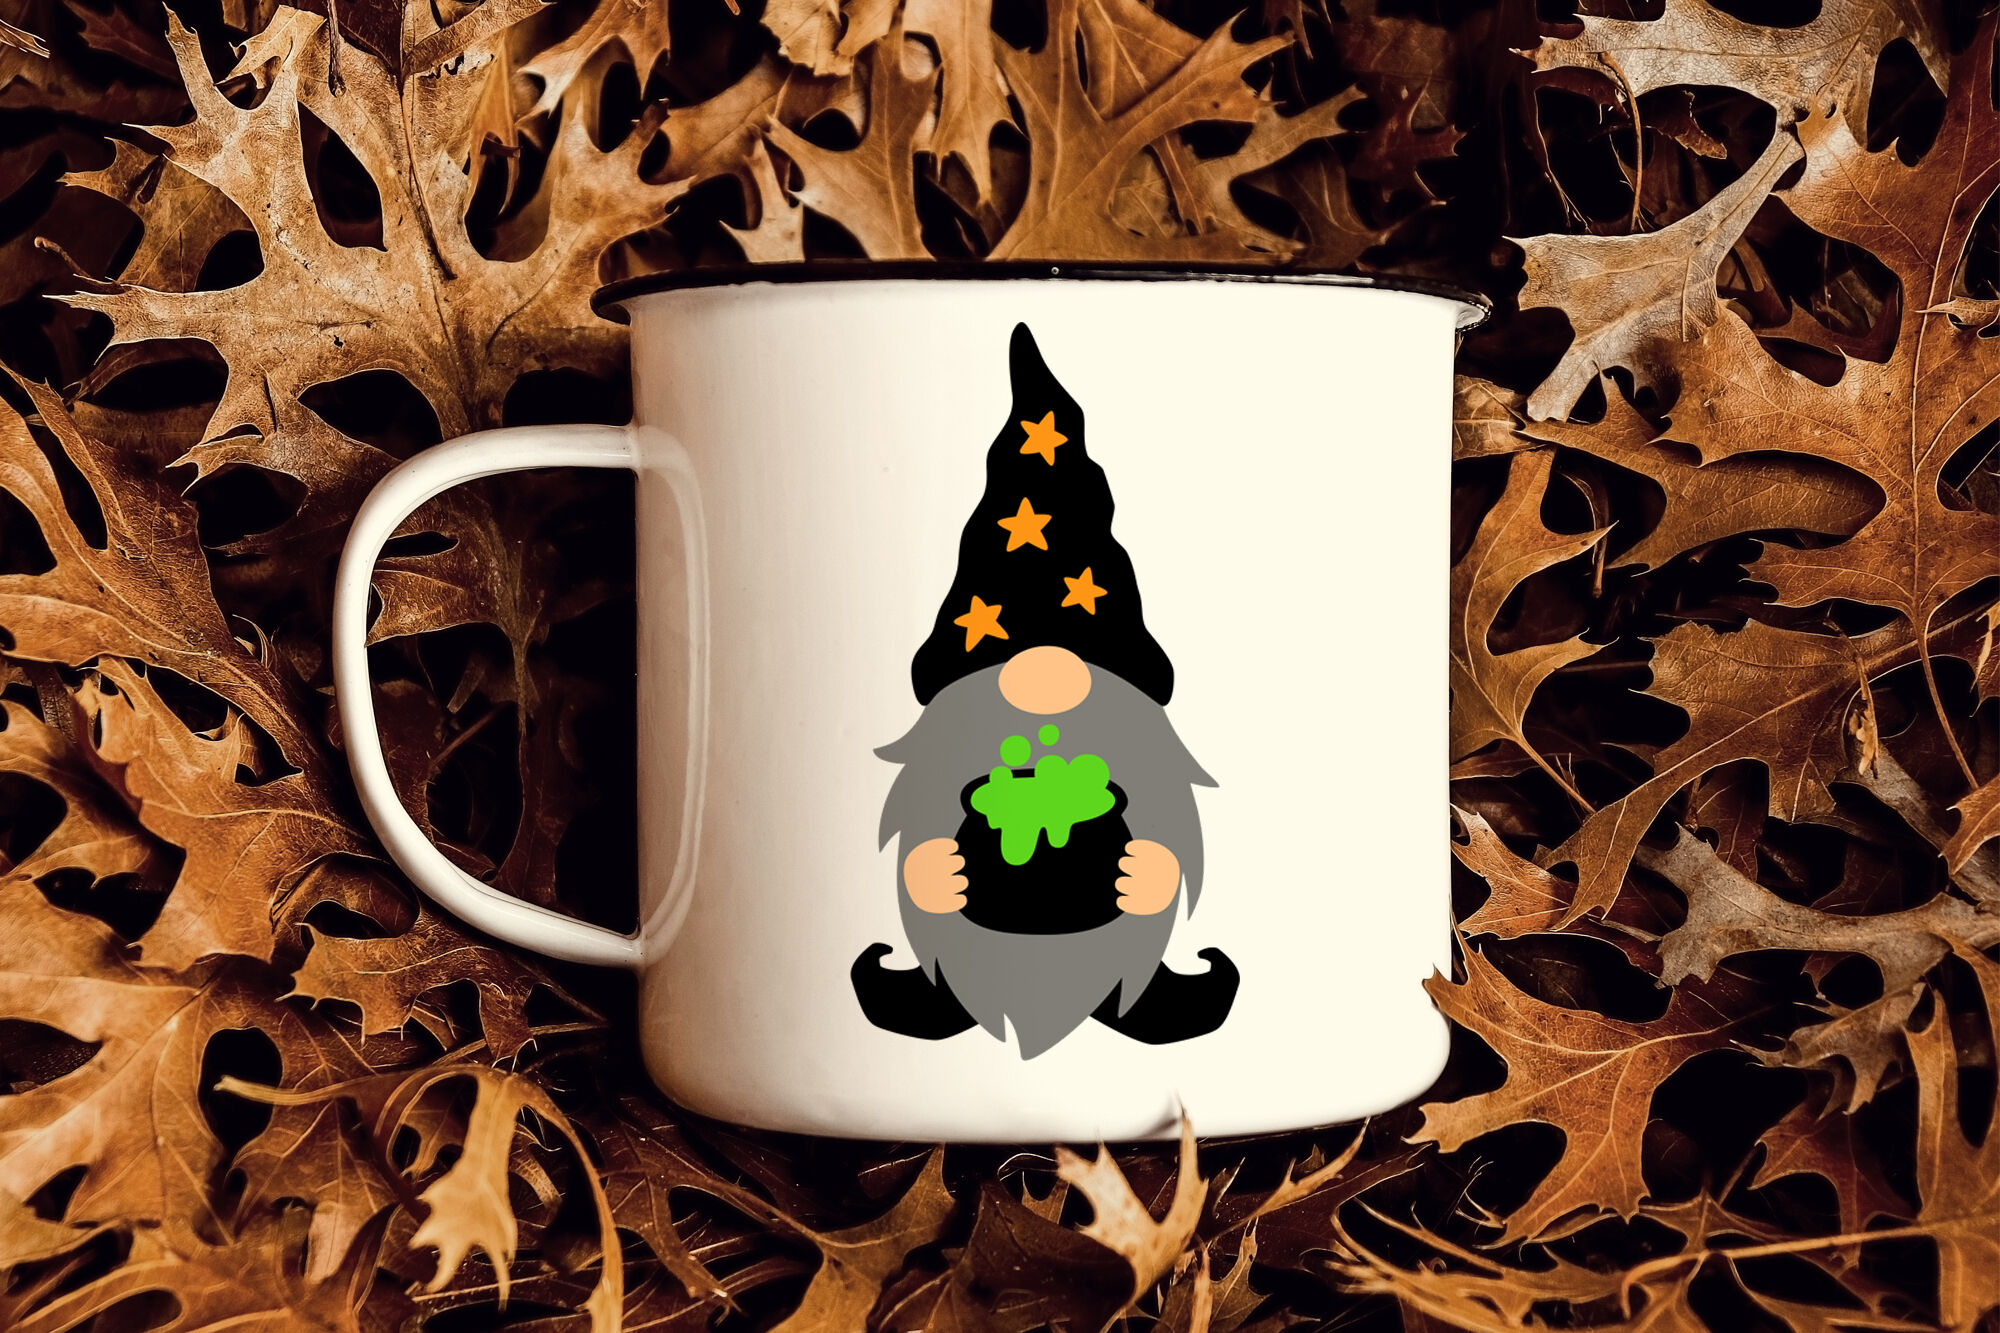 Download Gnome svg Halloween gnomes svg Gnome clipart Fall gnome ...